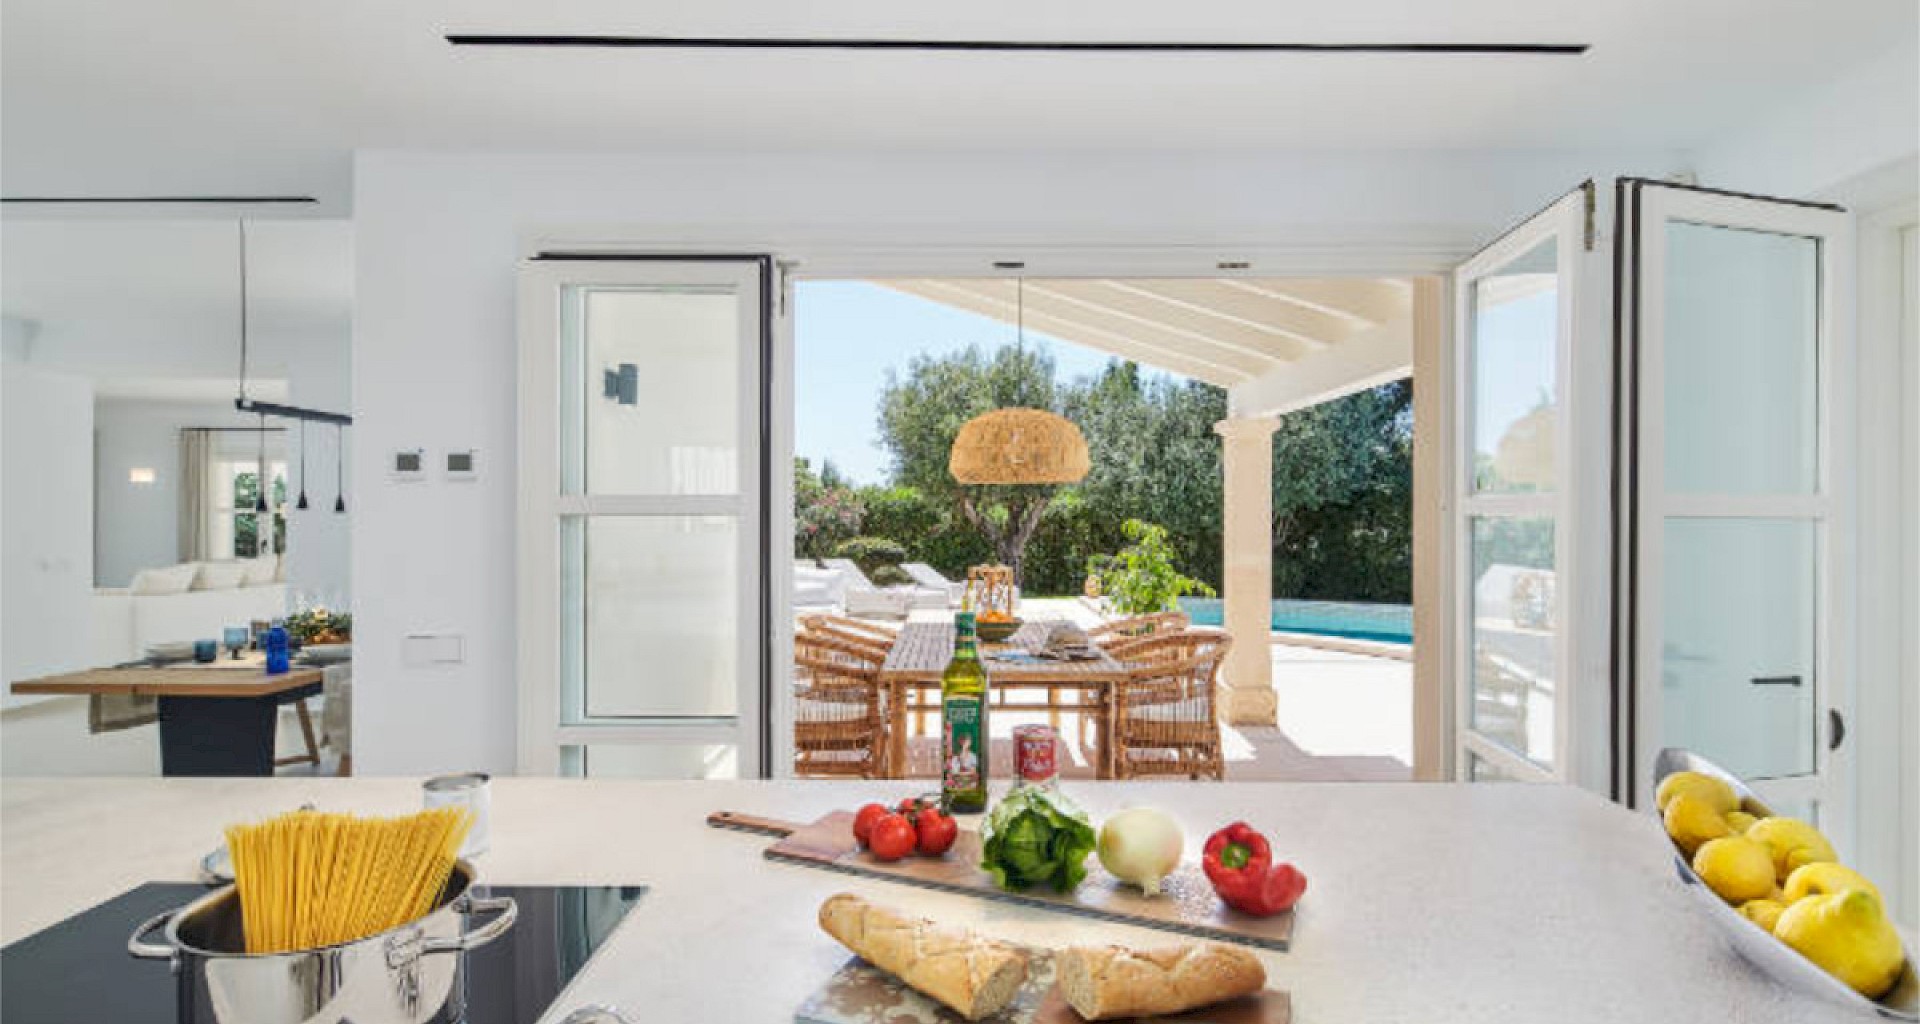 KROHN & LUEDEMANN Mediterranean Family Villa completely renovated in best location in Santa Ponsa for sale kochen mit schönem Blick